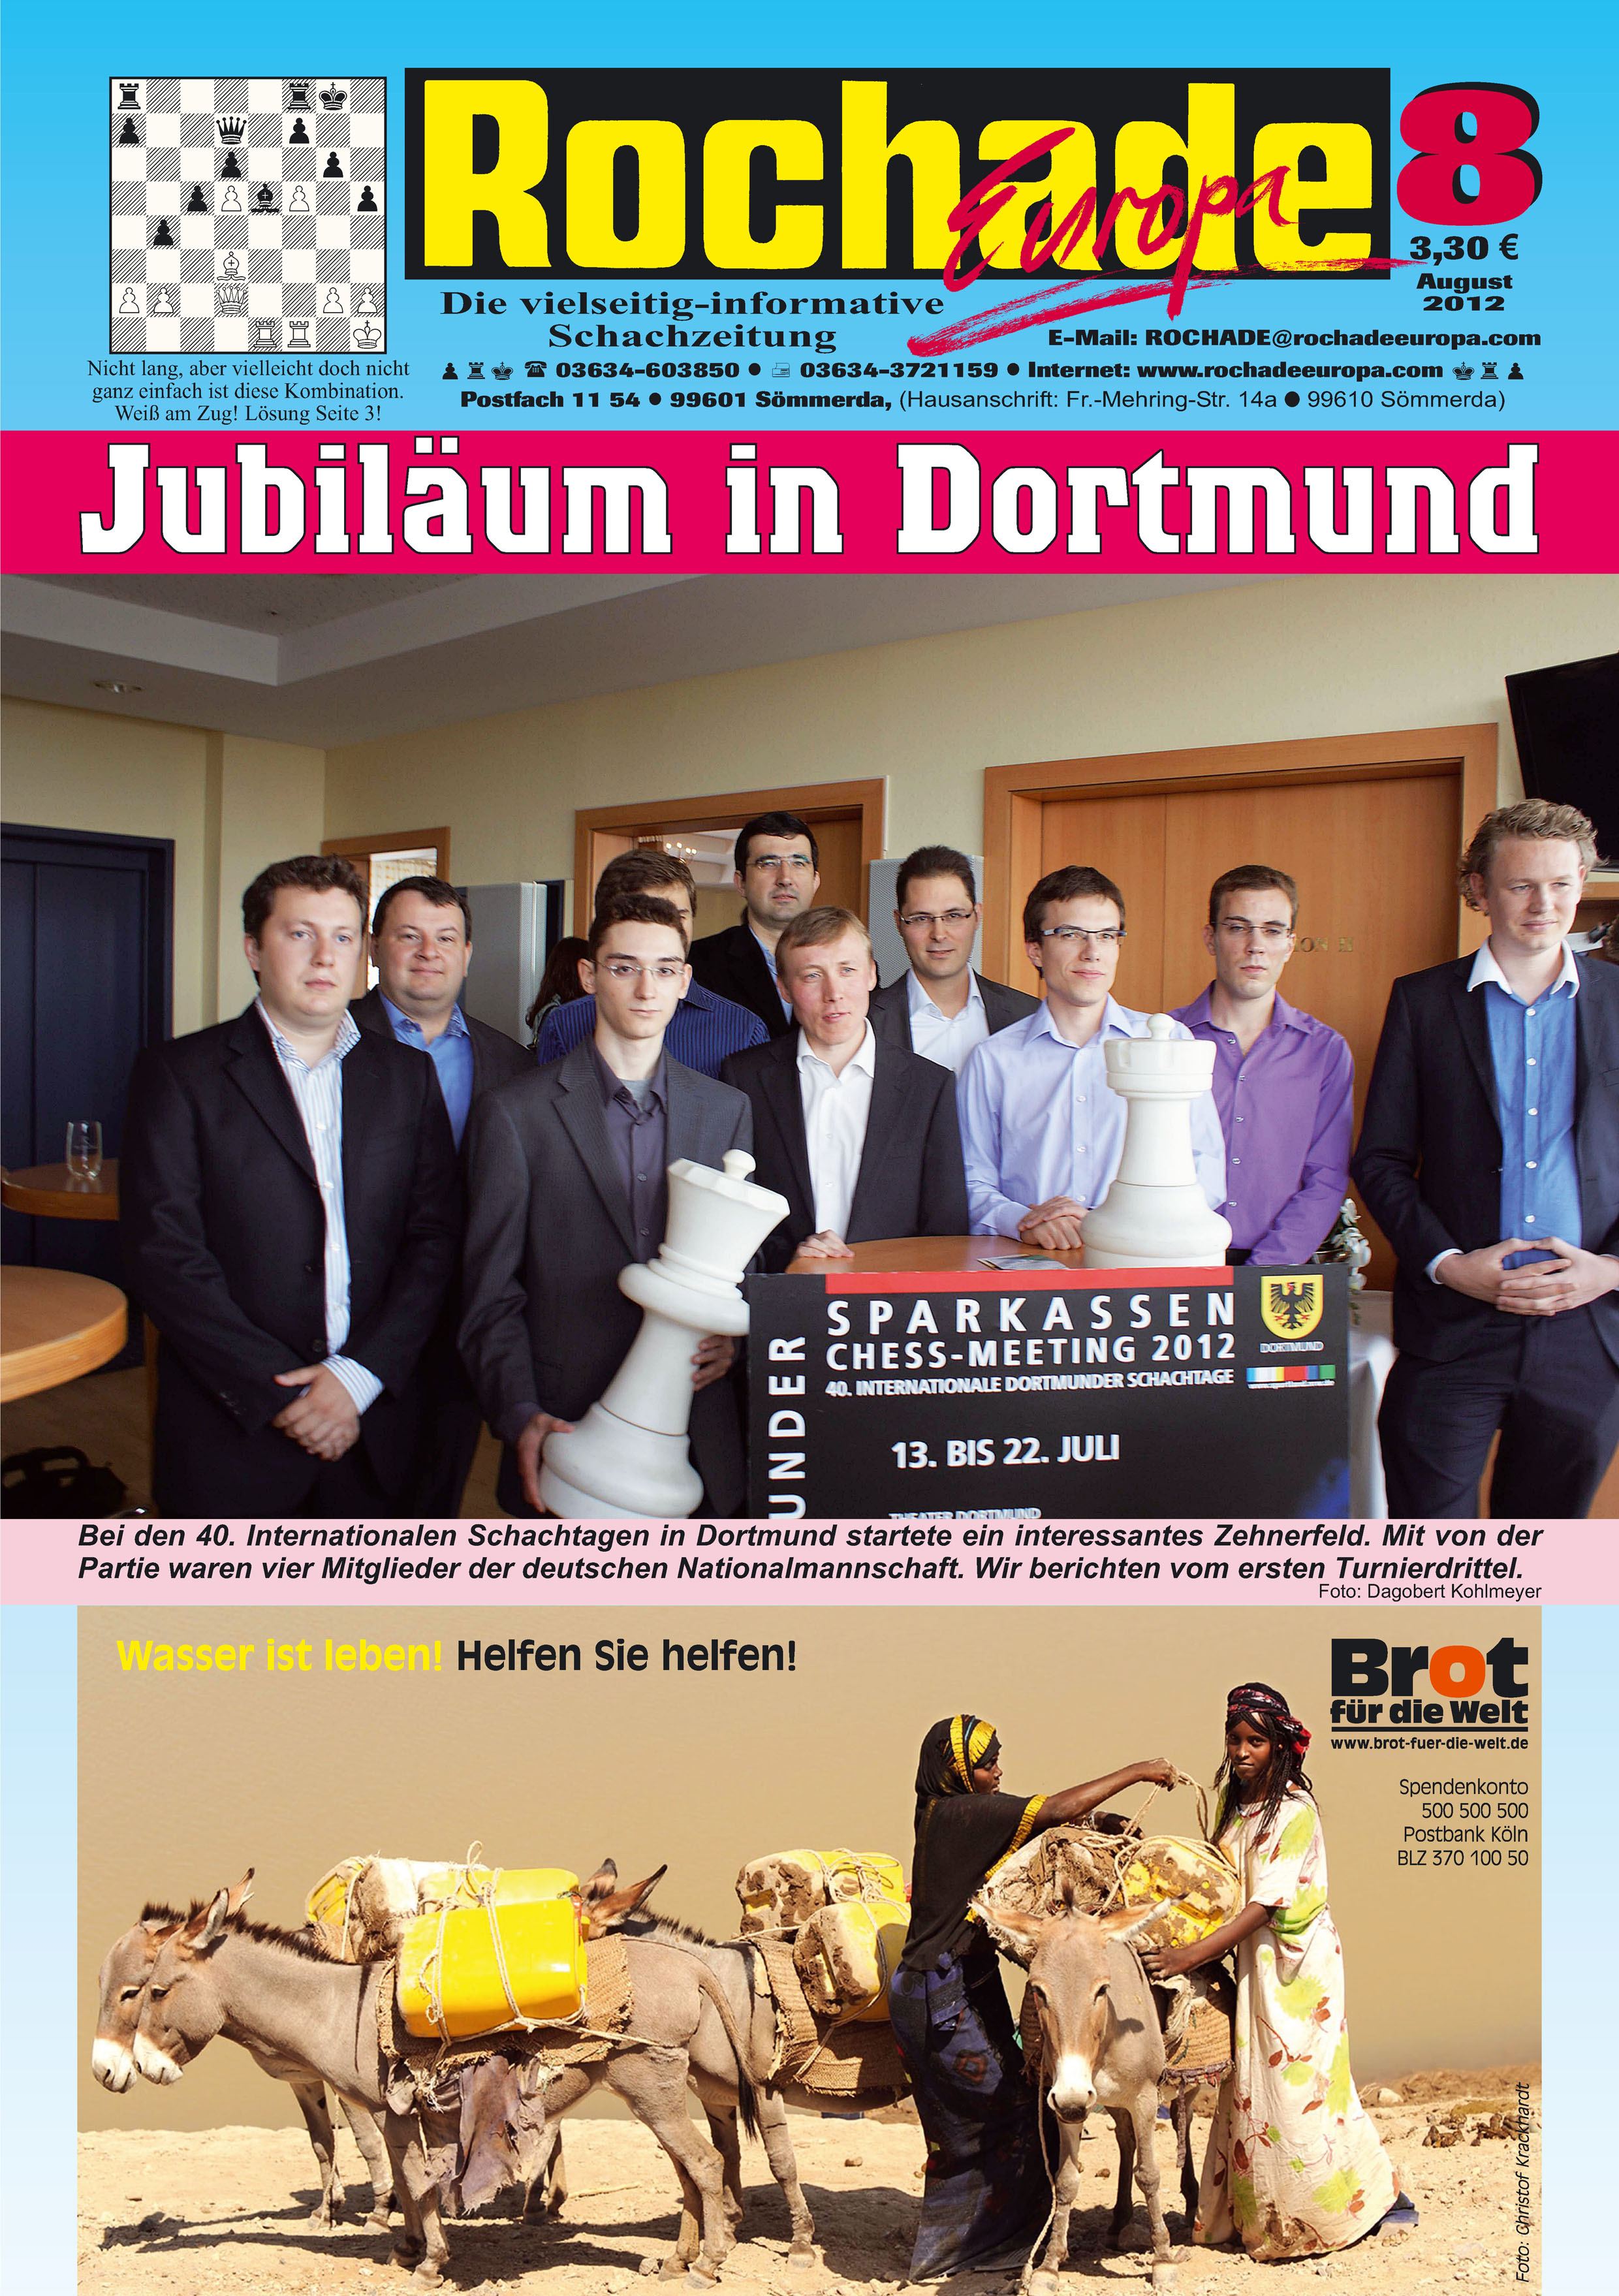 Schachzeitung Rochade Europa 2012 08 Titelseite